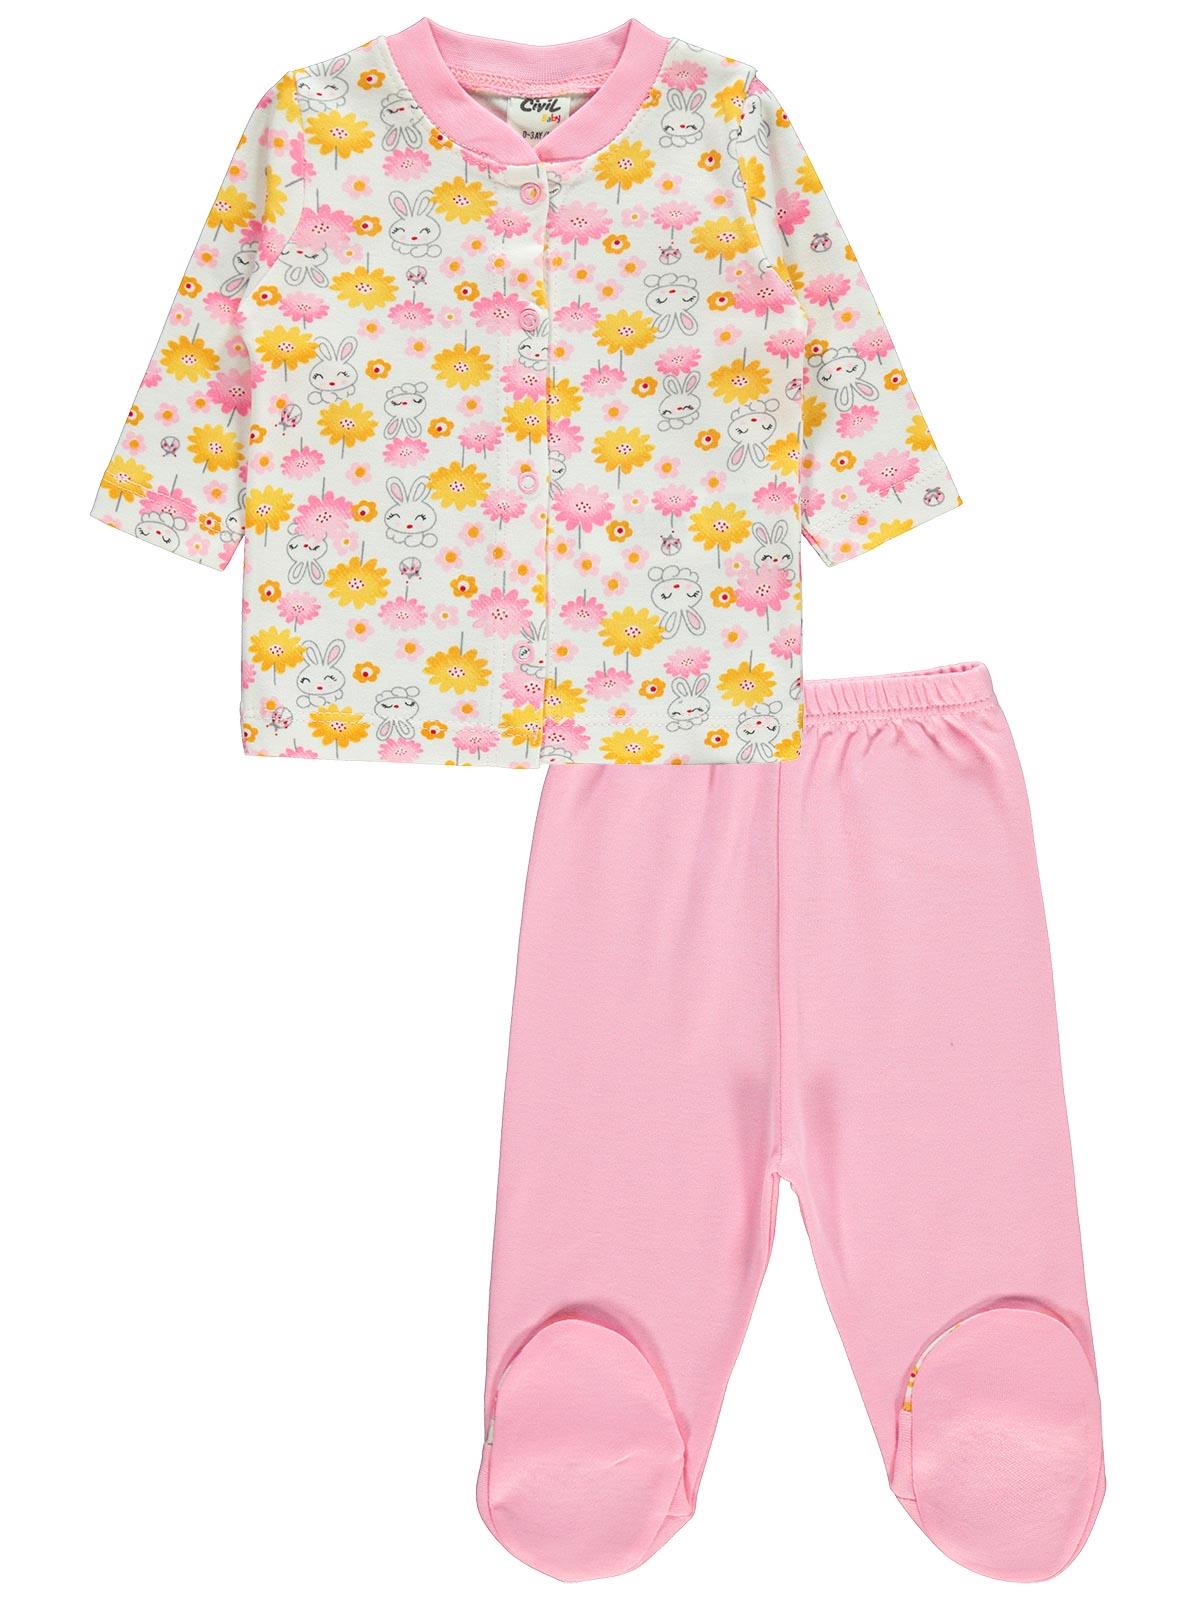 Civil Baby Bebek Pijama Takımı 0-6 Ay Pembe